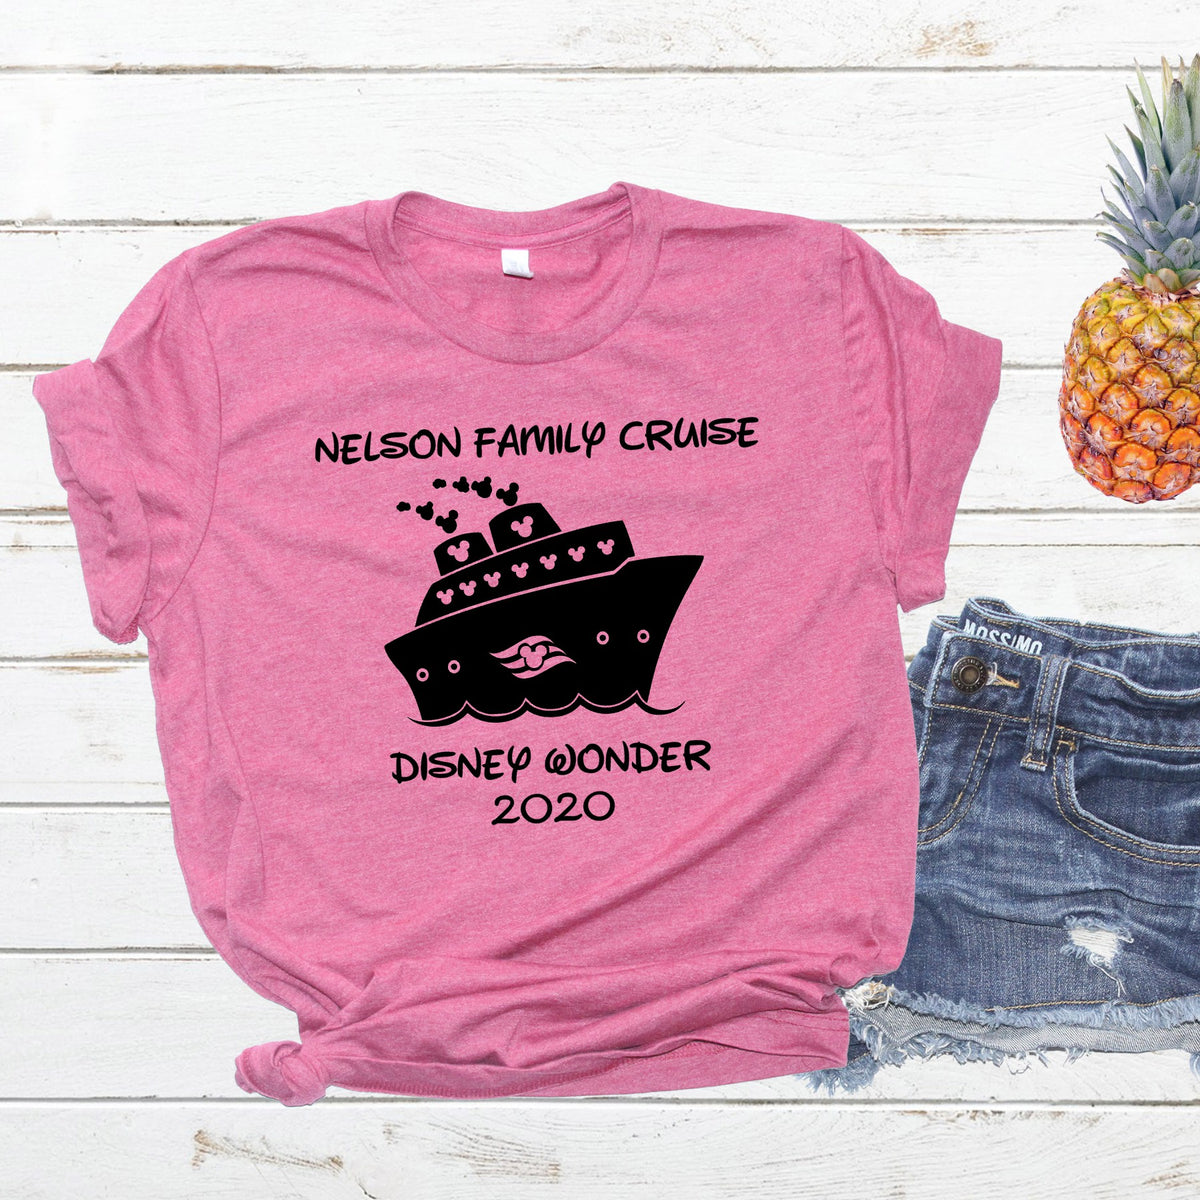 personalized disney cruise shirts